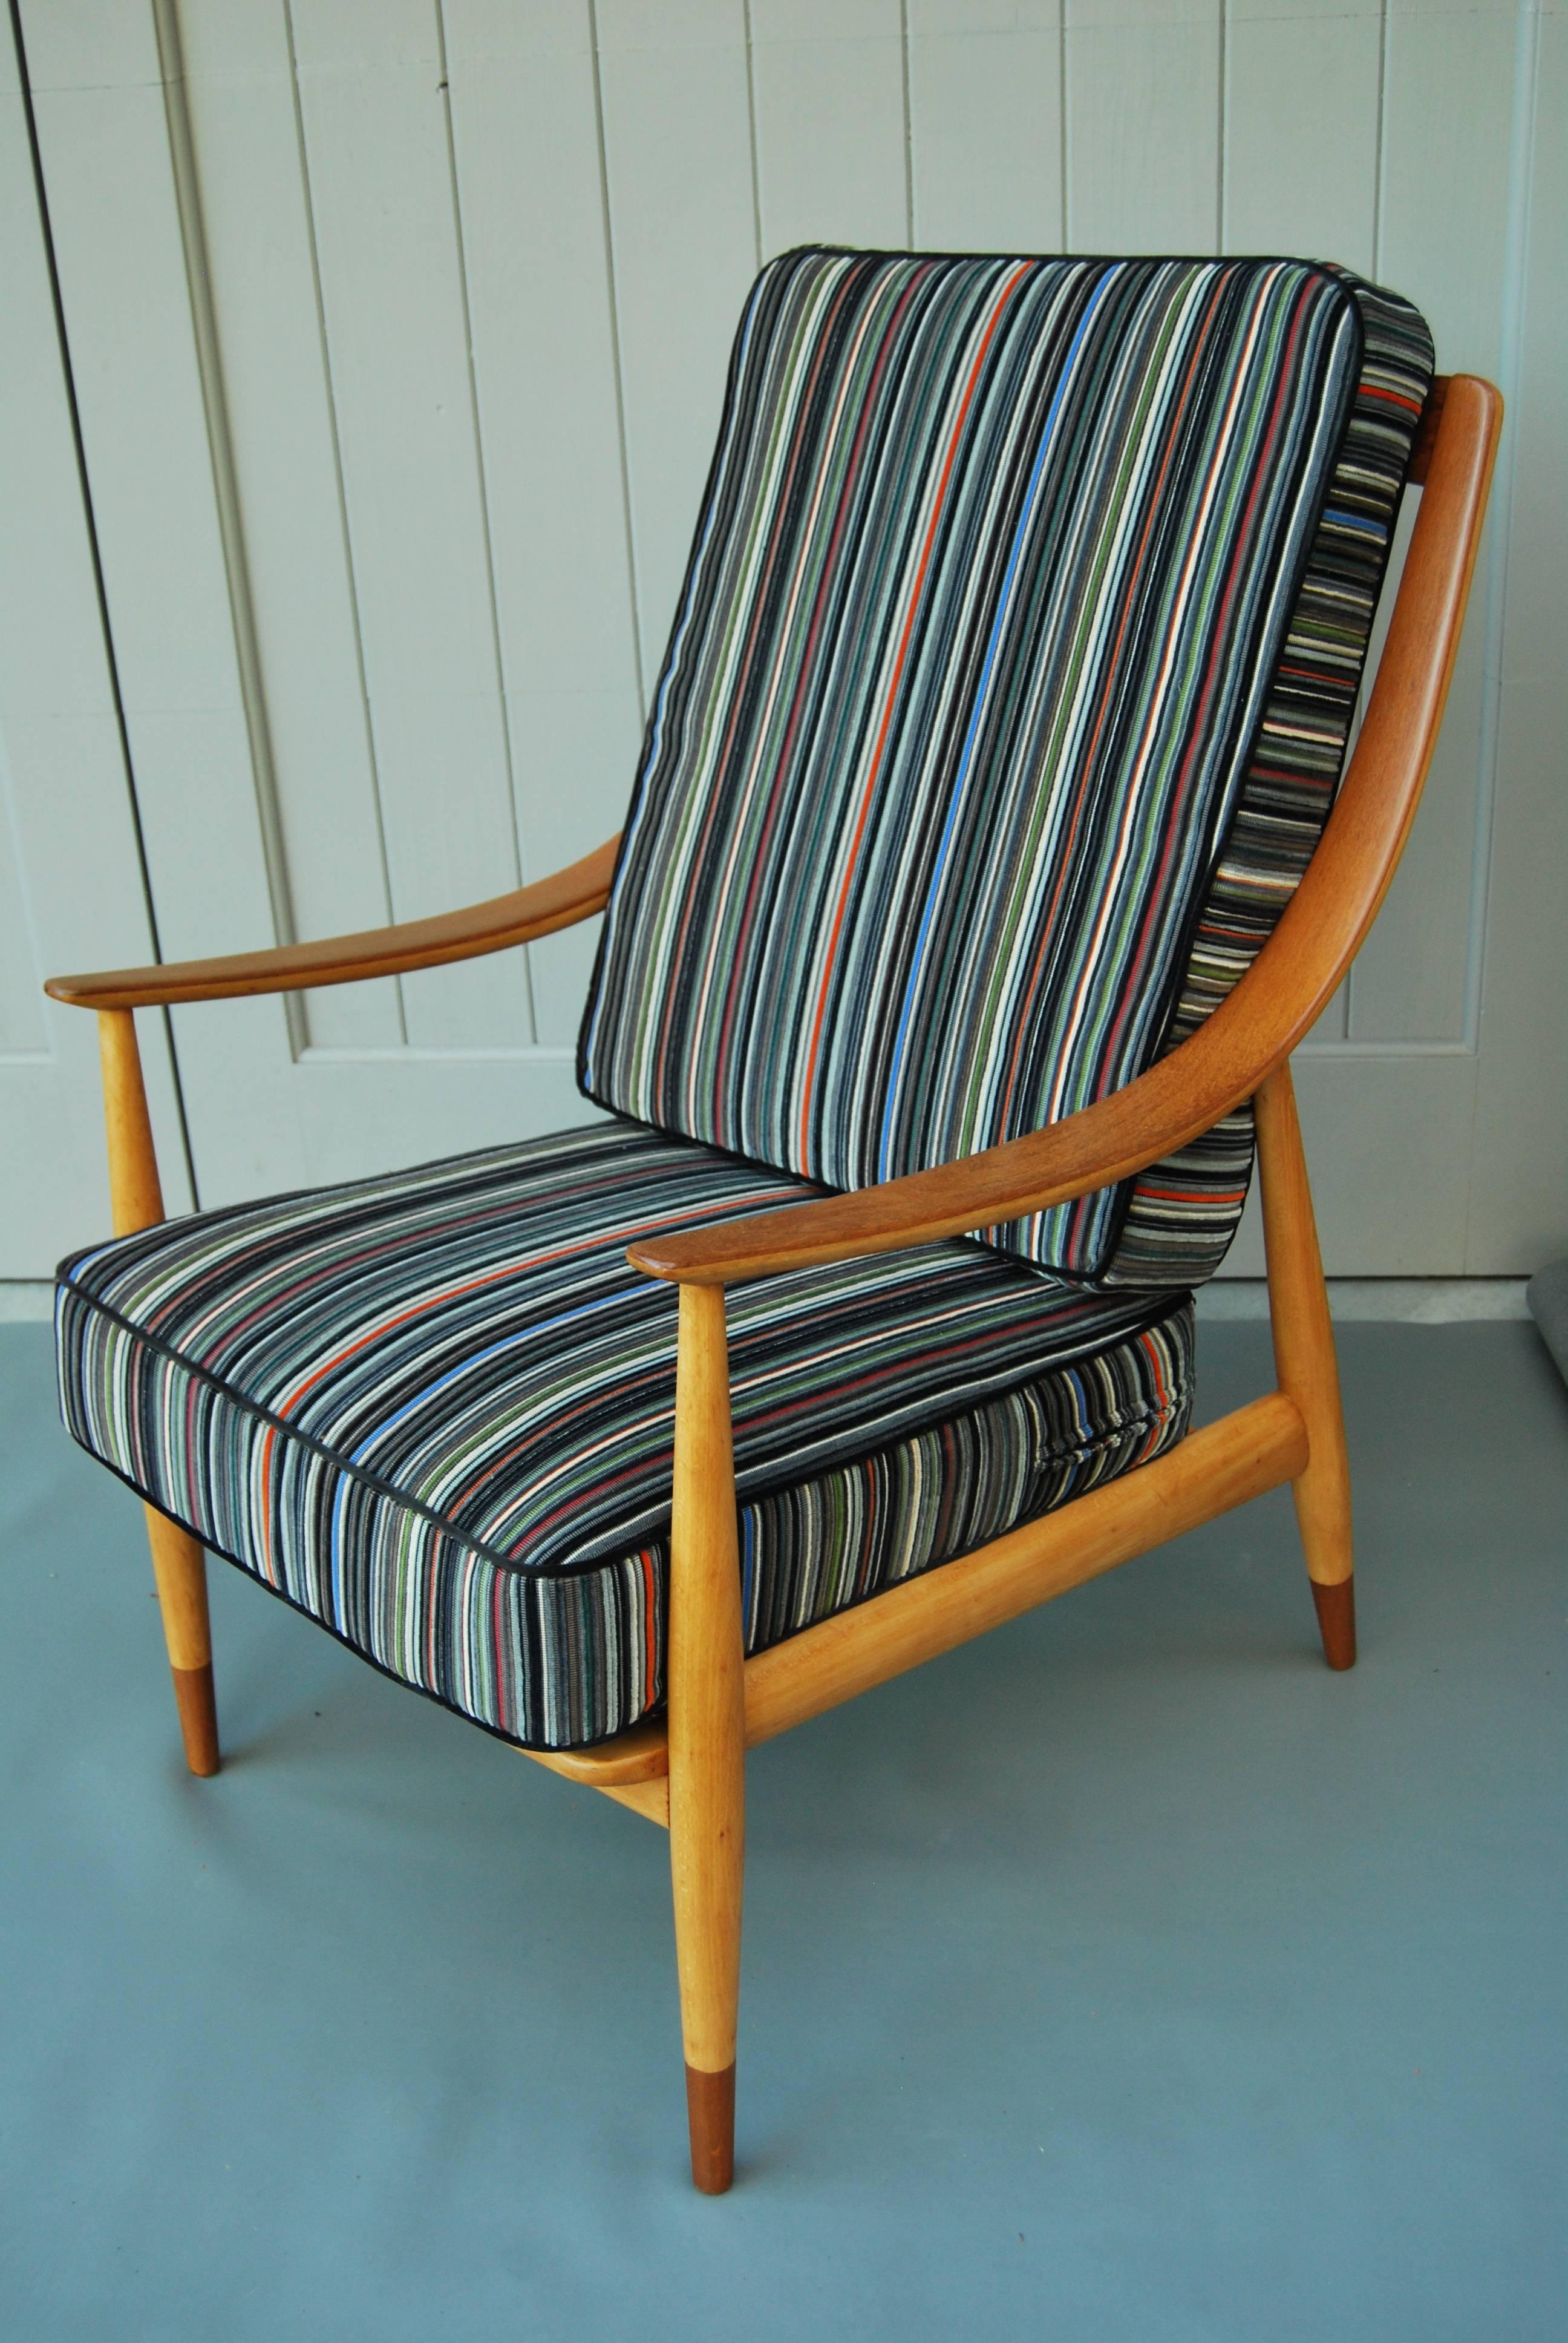 Chaise de grande taille en teck facile Peter Hvidt, produite par France & Son, années 1960, nouvellement restaurée et retapissée.
Le cadre a été restauré dans sa couleur naturelle d'origine et les coussins à ressort ont été retapissés en velours